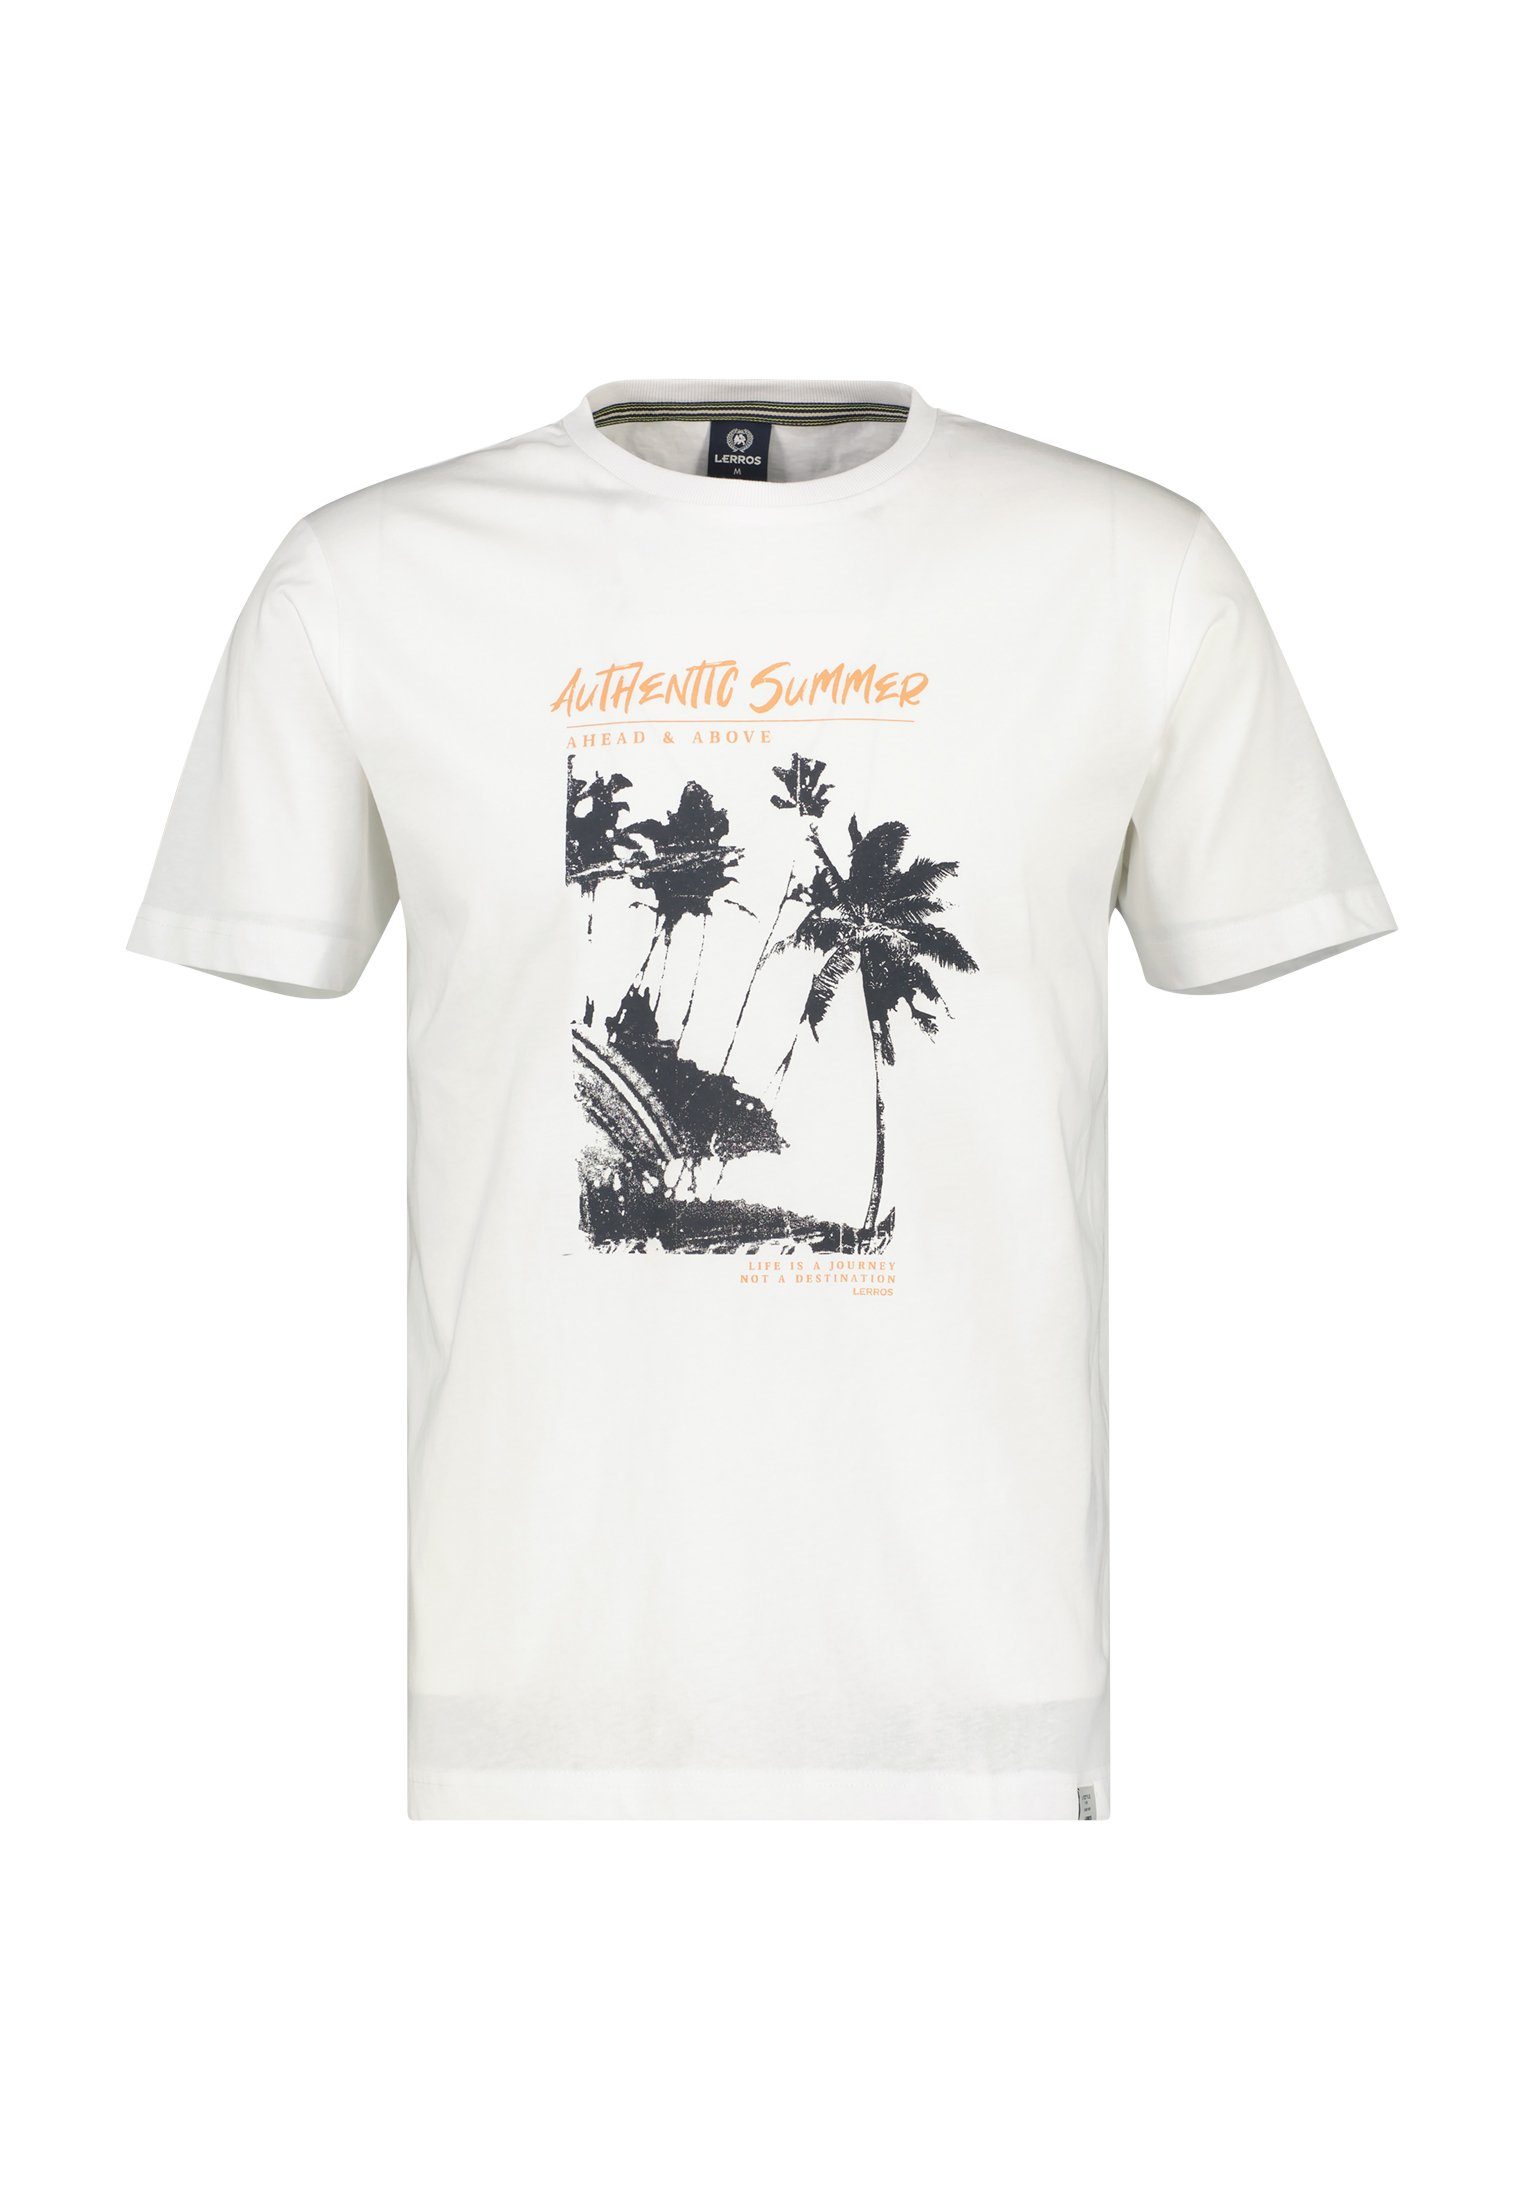 LERROS T-Shirt LERROS T-Shirt mit Frontprint, Hochwertige Baumwollqualität